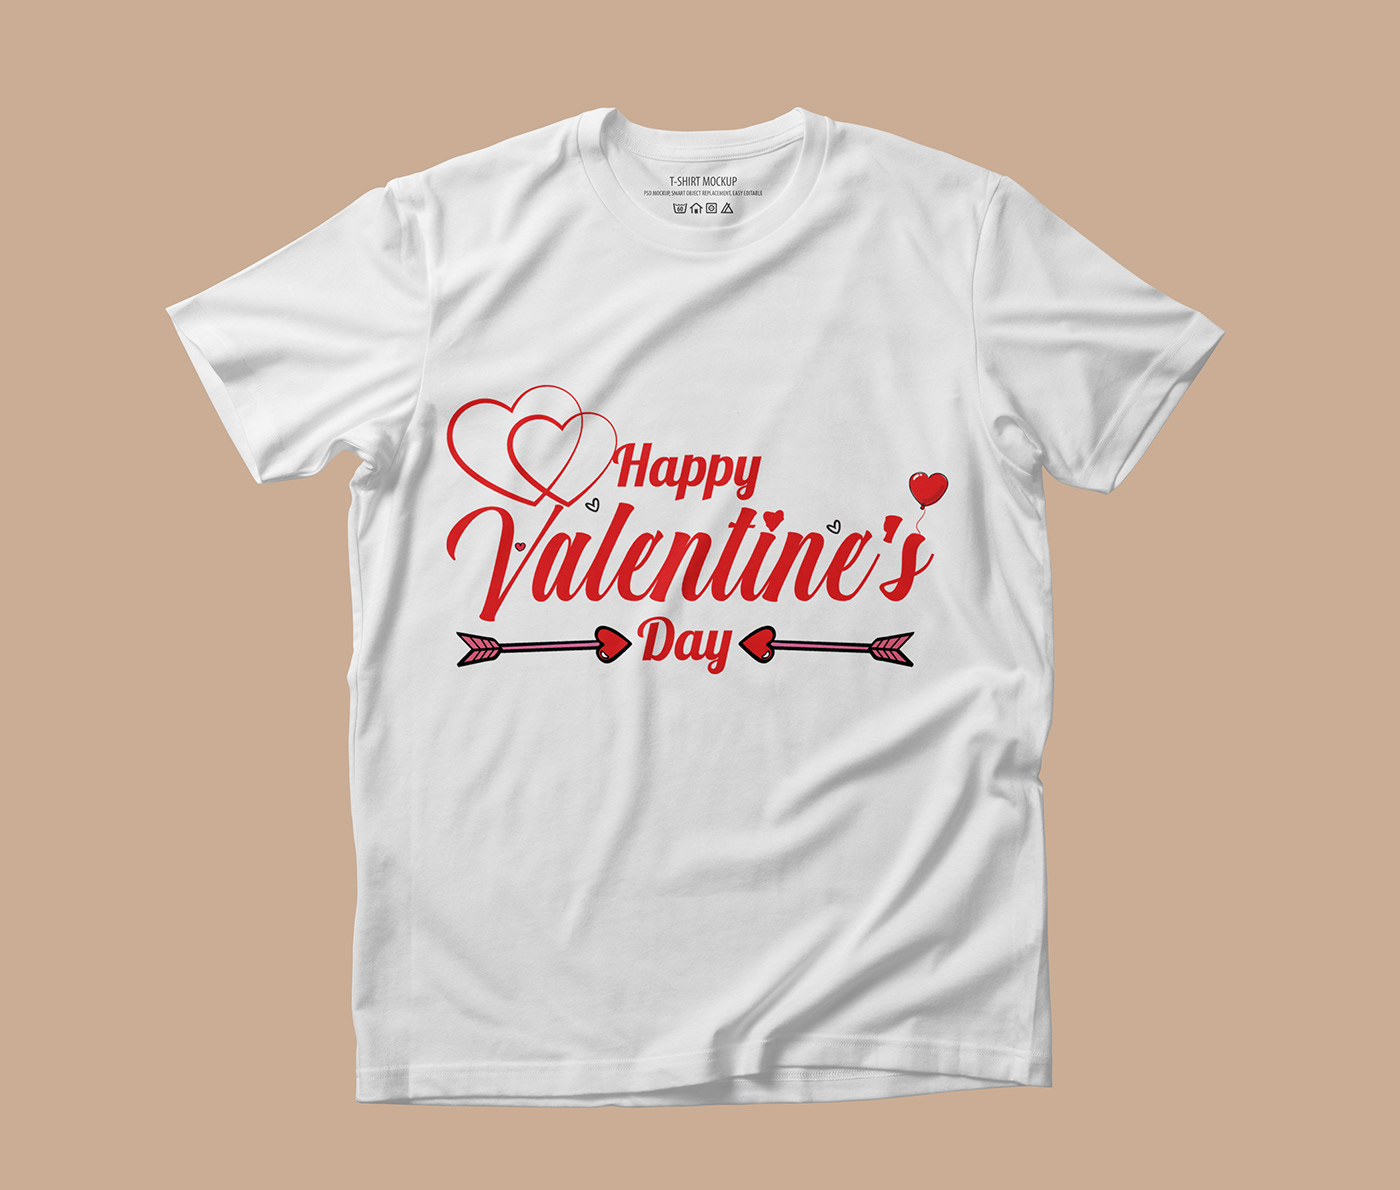 Sweatshirt Valentine's Day valentines Love couple wedding marriage Wedding Photography valentine t shirt design